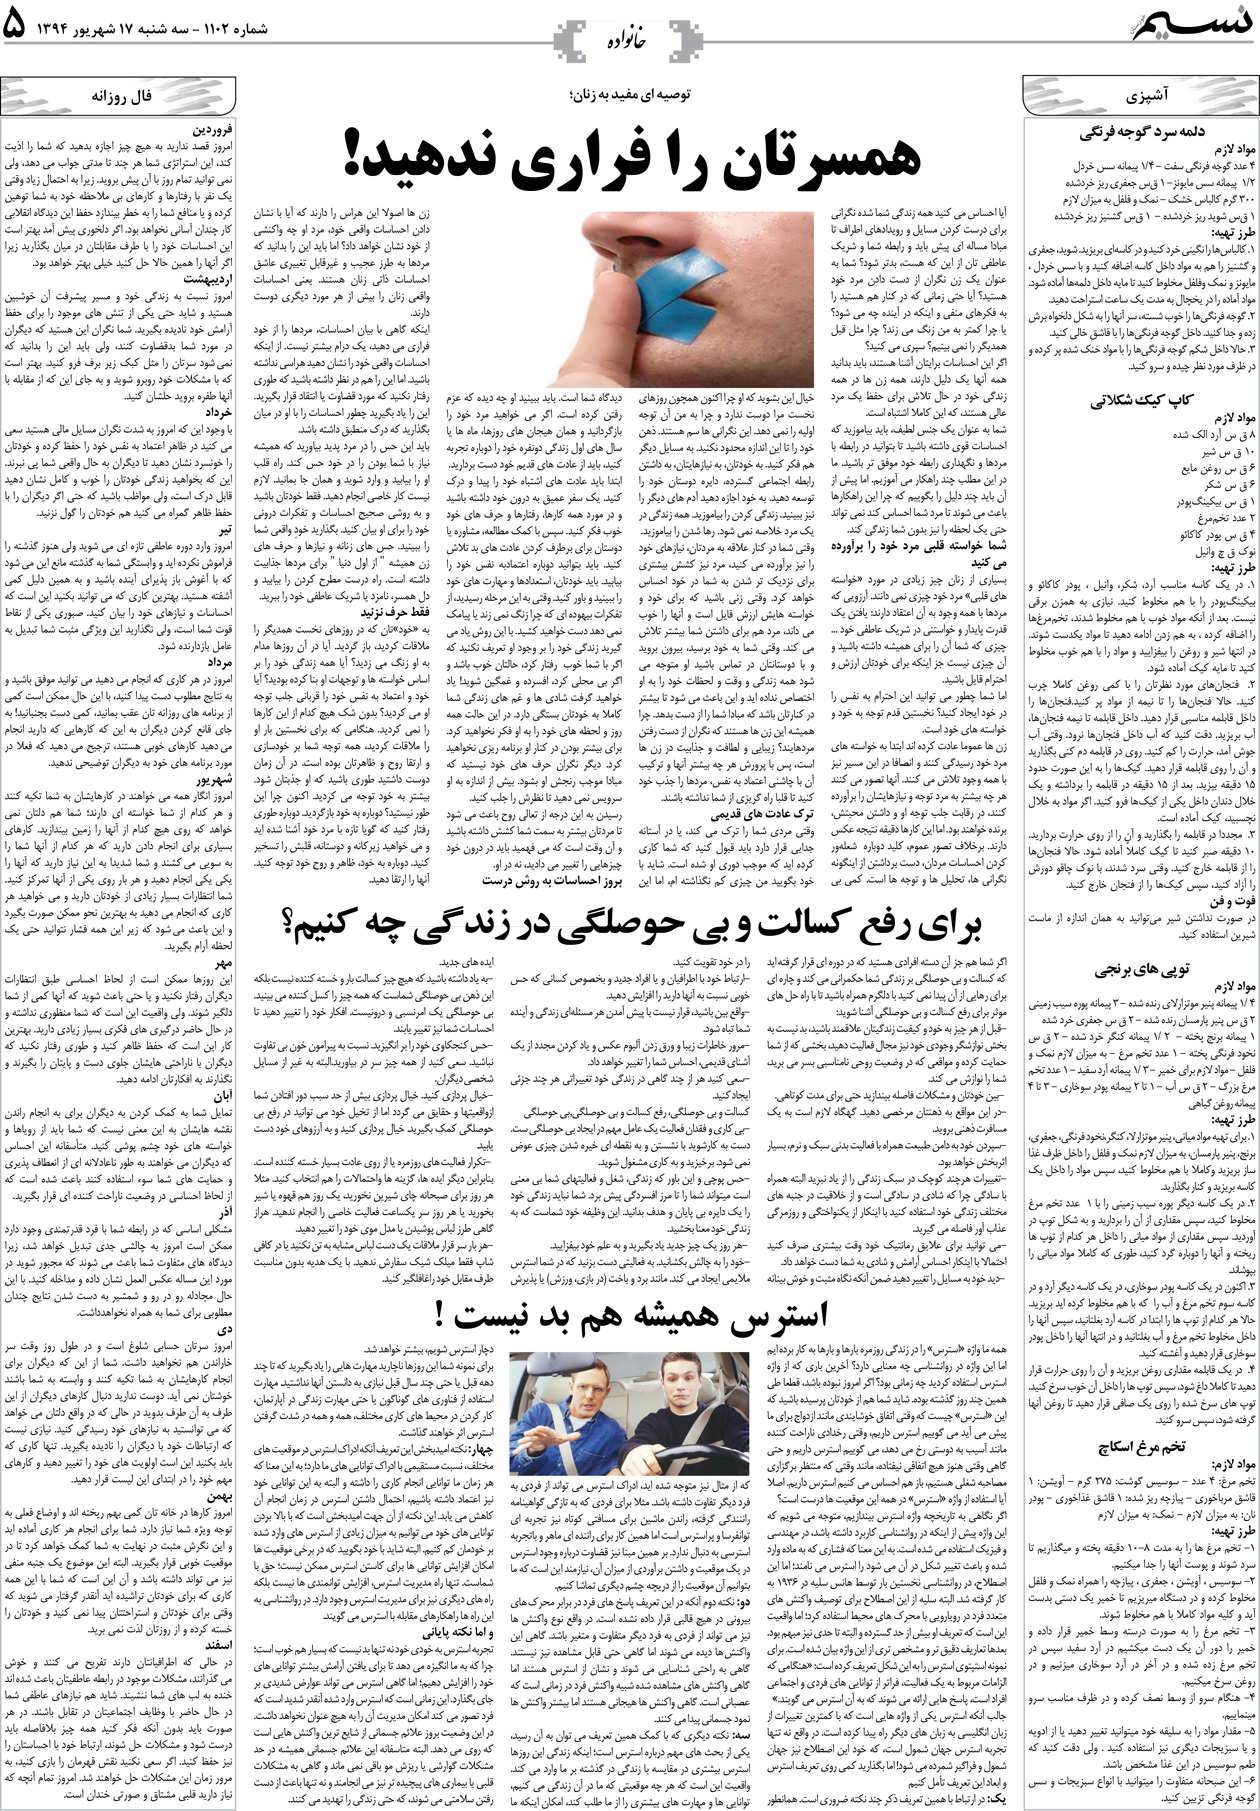 صفحه خانواده روزنامه نسیم شماره 1102